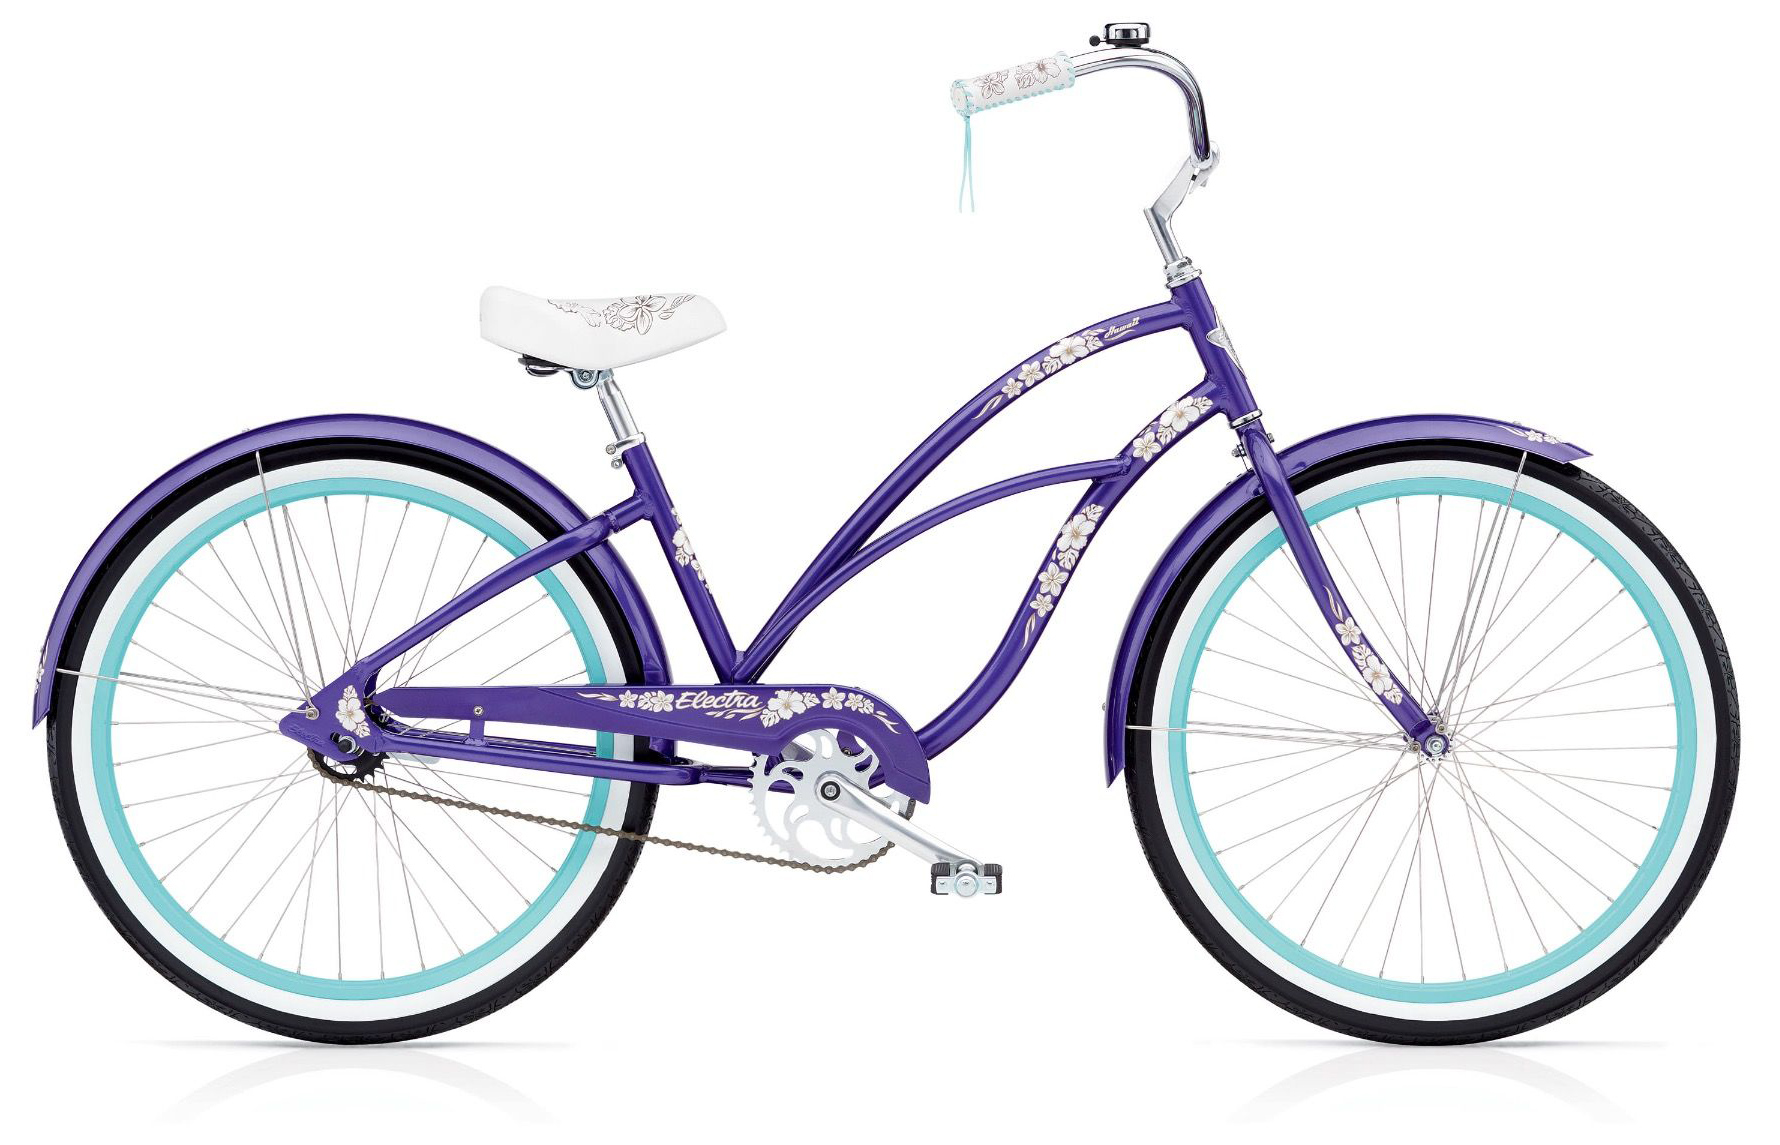  Отзывы о Женском велосипеде Electra Cruiser Hawaii 3i 2019